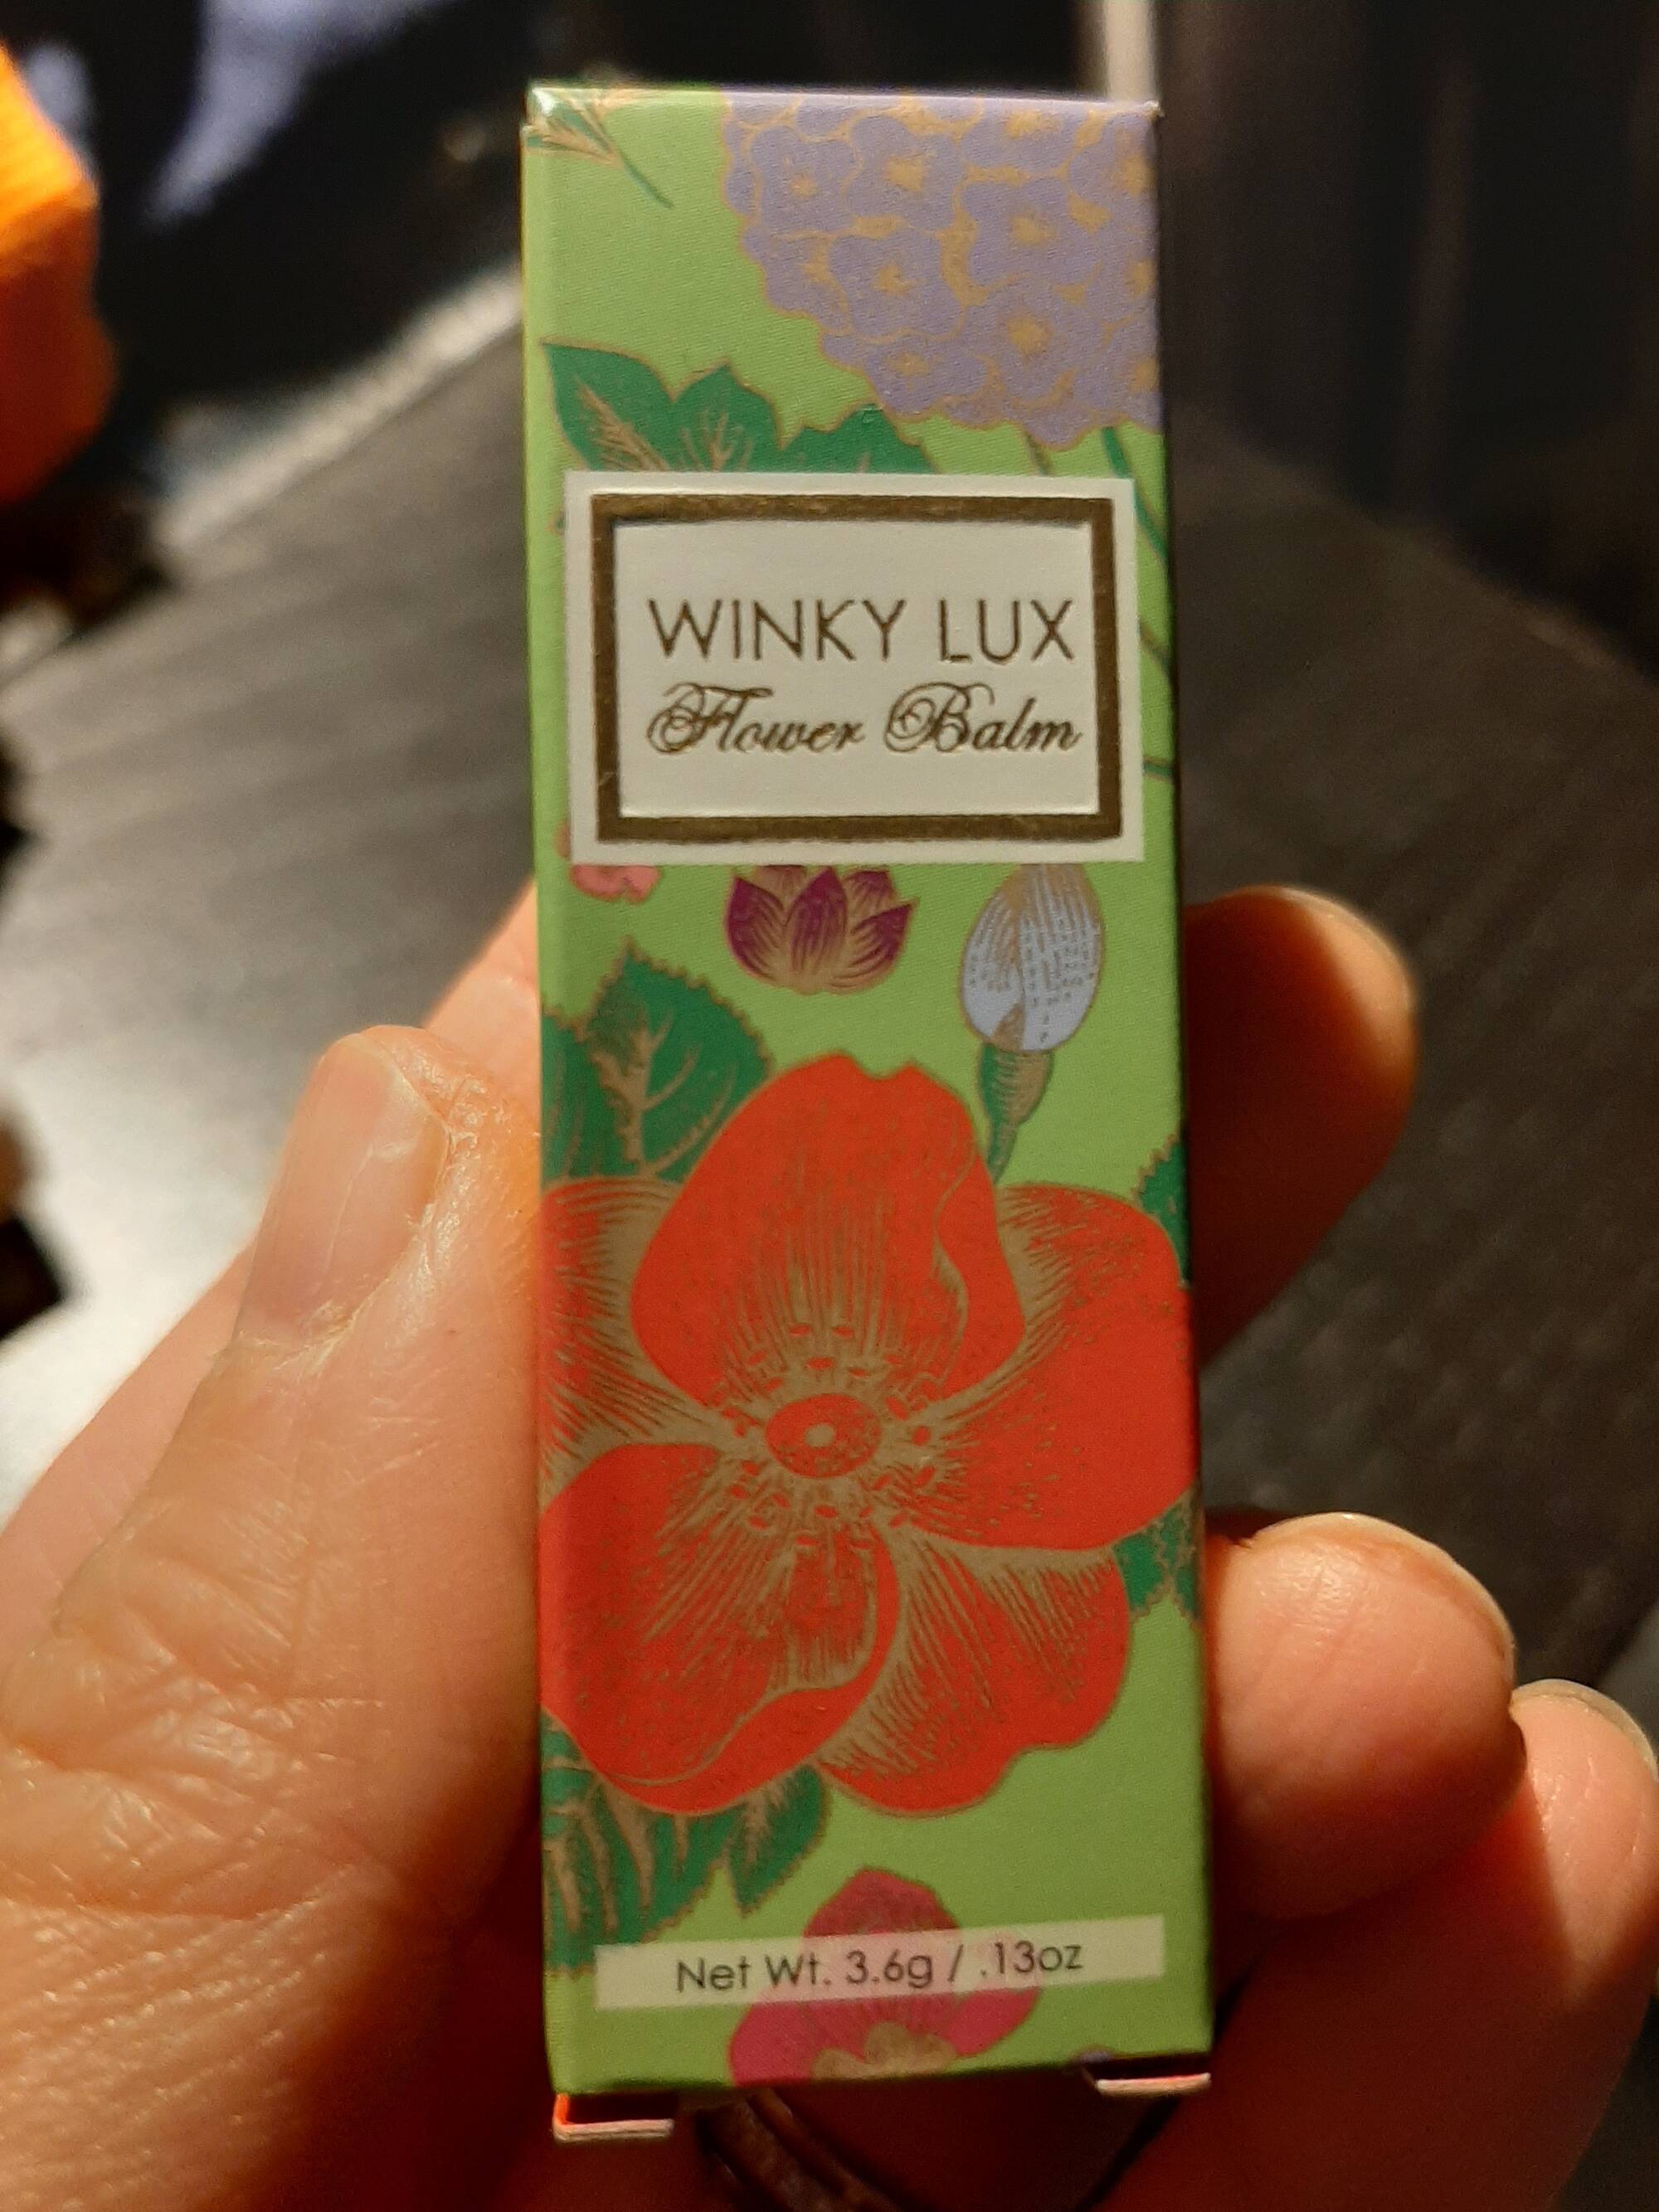 WINKY LUX - Flower balm